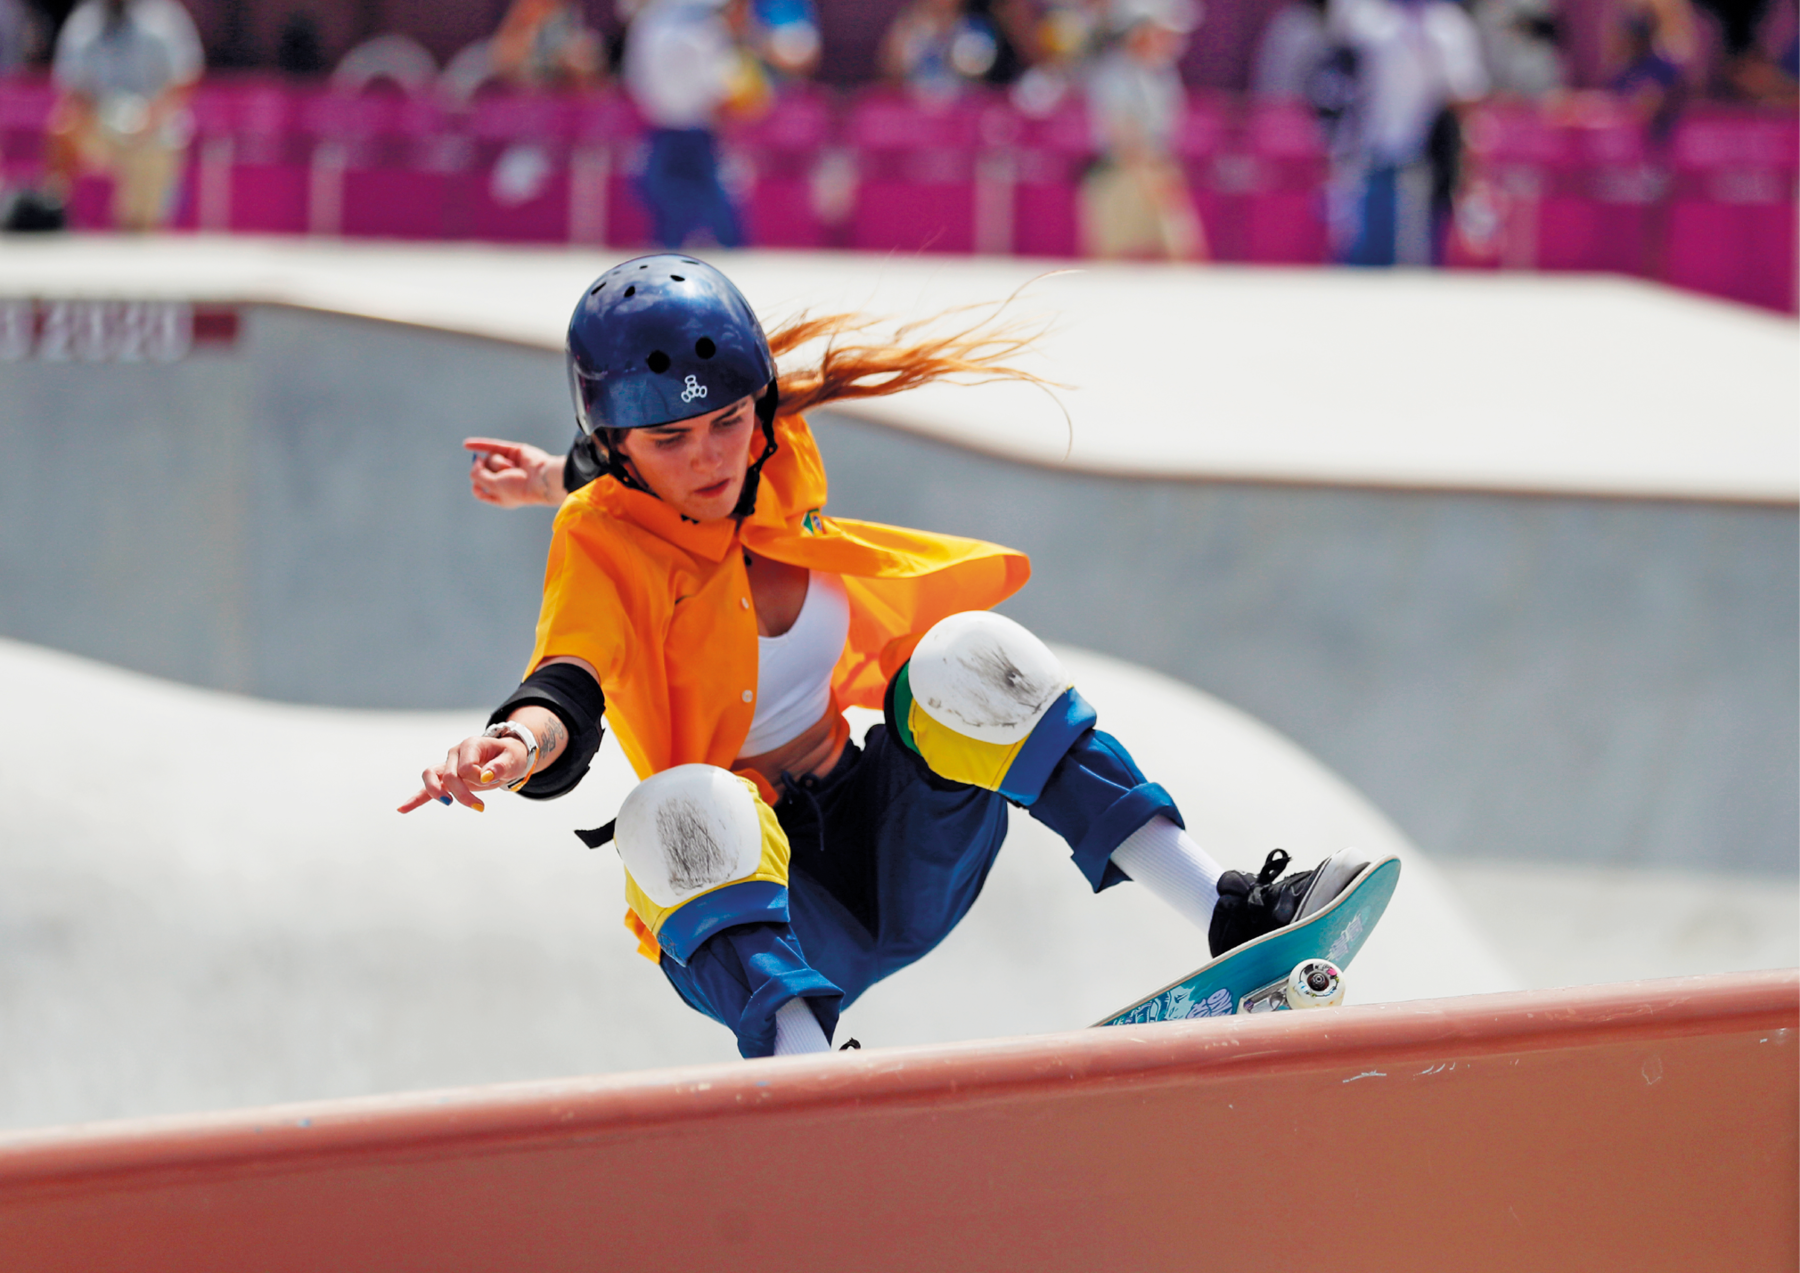 Fotografia. Menina skatista de capacete e joelheiras fazendo uma manobra. Está com as pernas flexionadas e um dos braços para trás. Usa camisa laranja e calça azul.